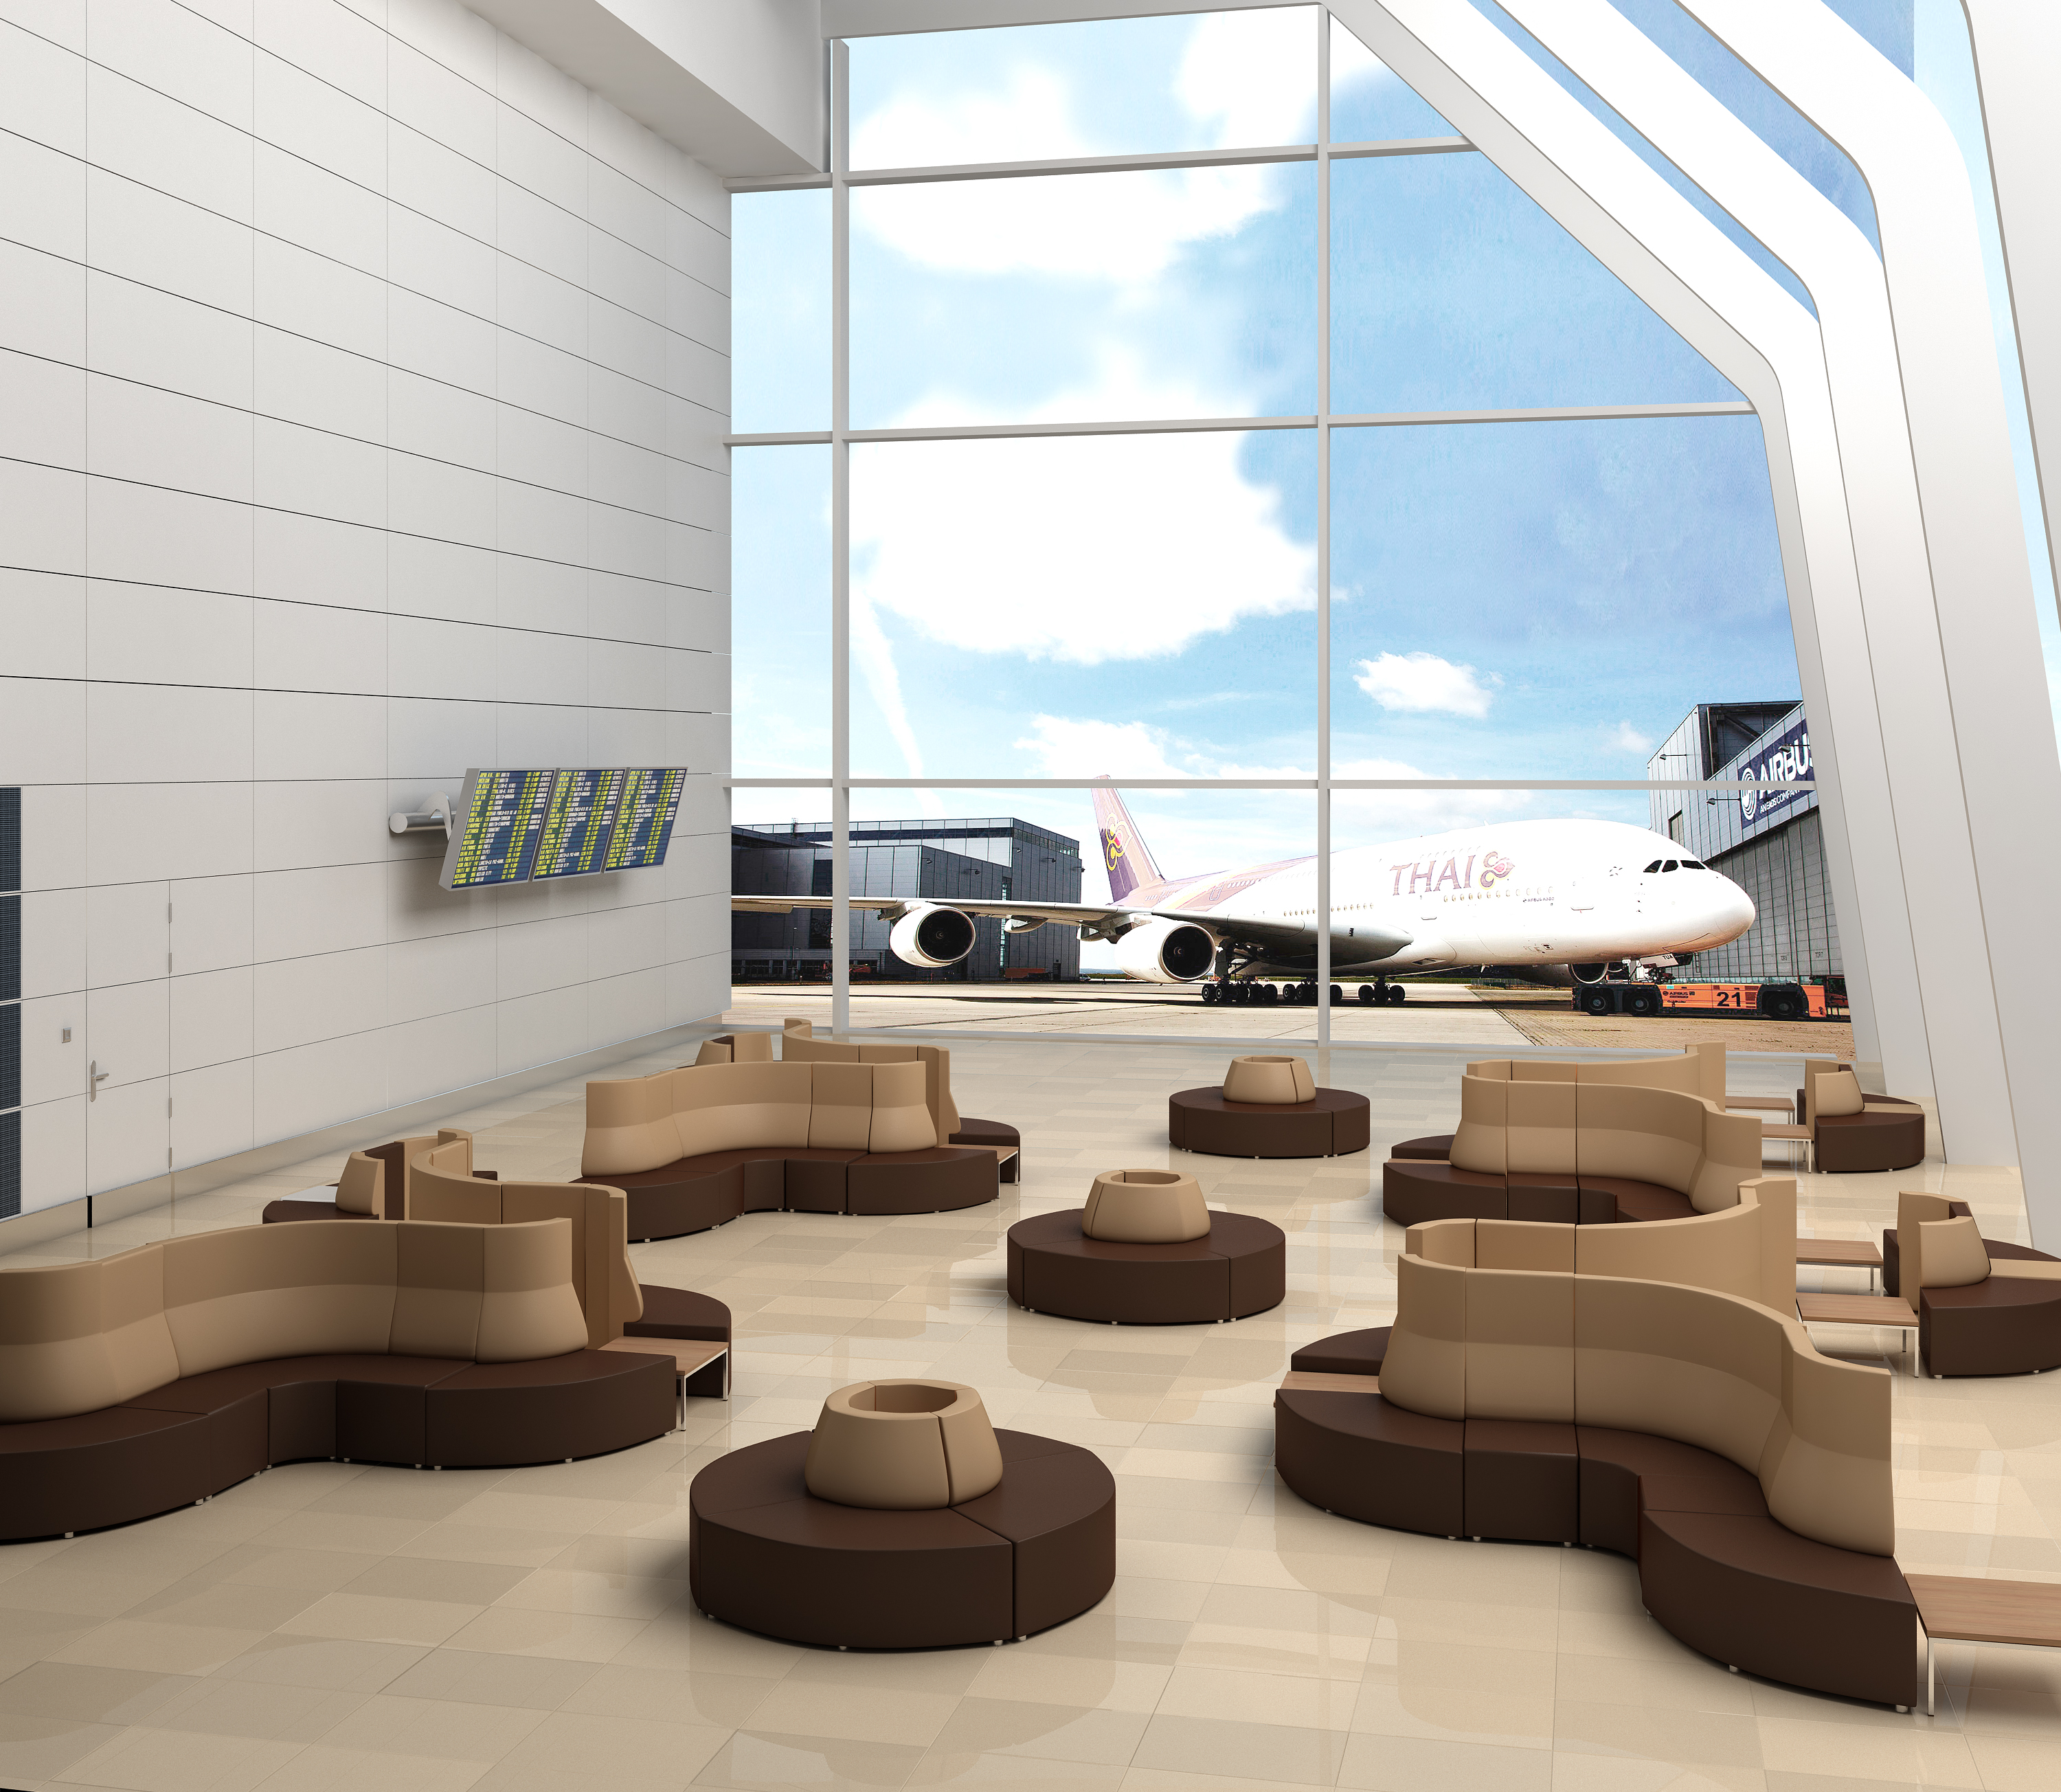 Выбор мебели для залов ожидания аэропортов, вокзалов